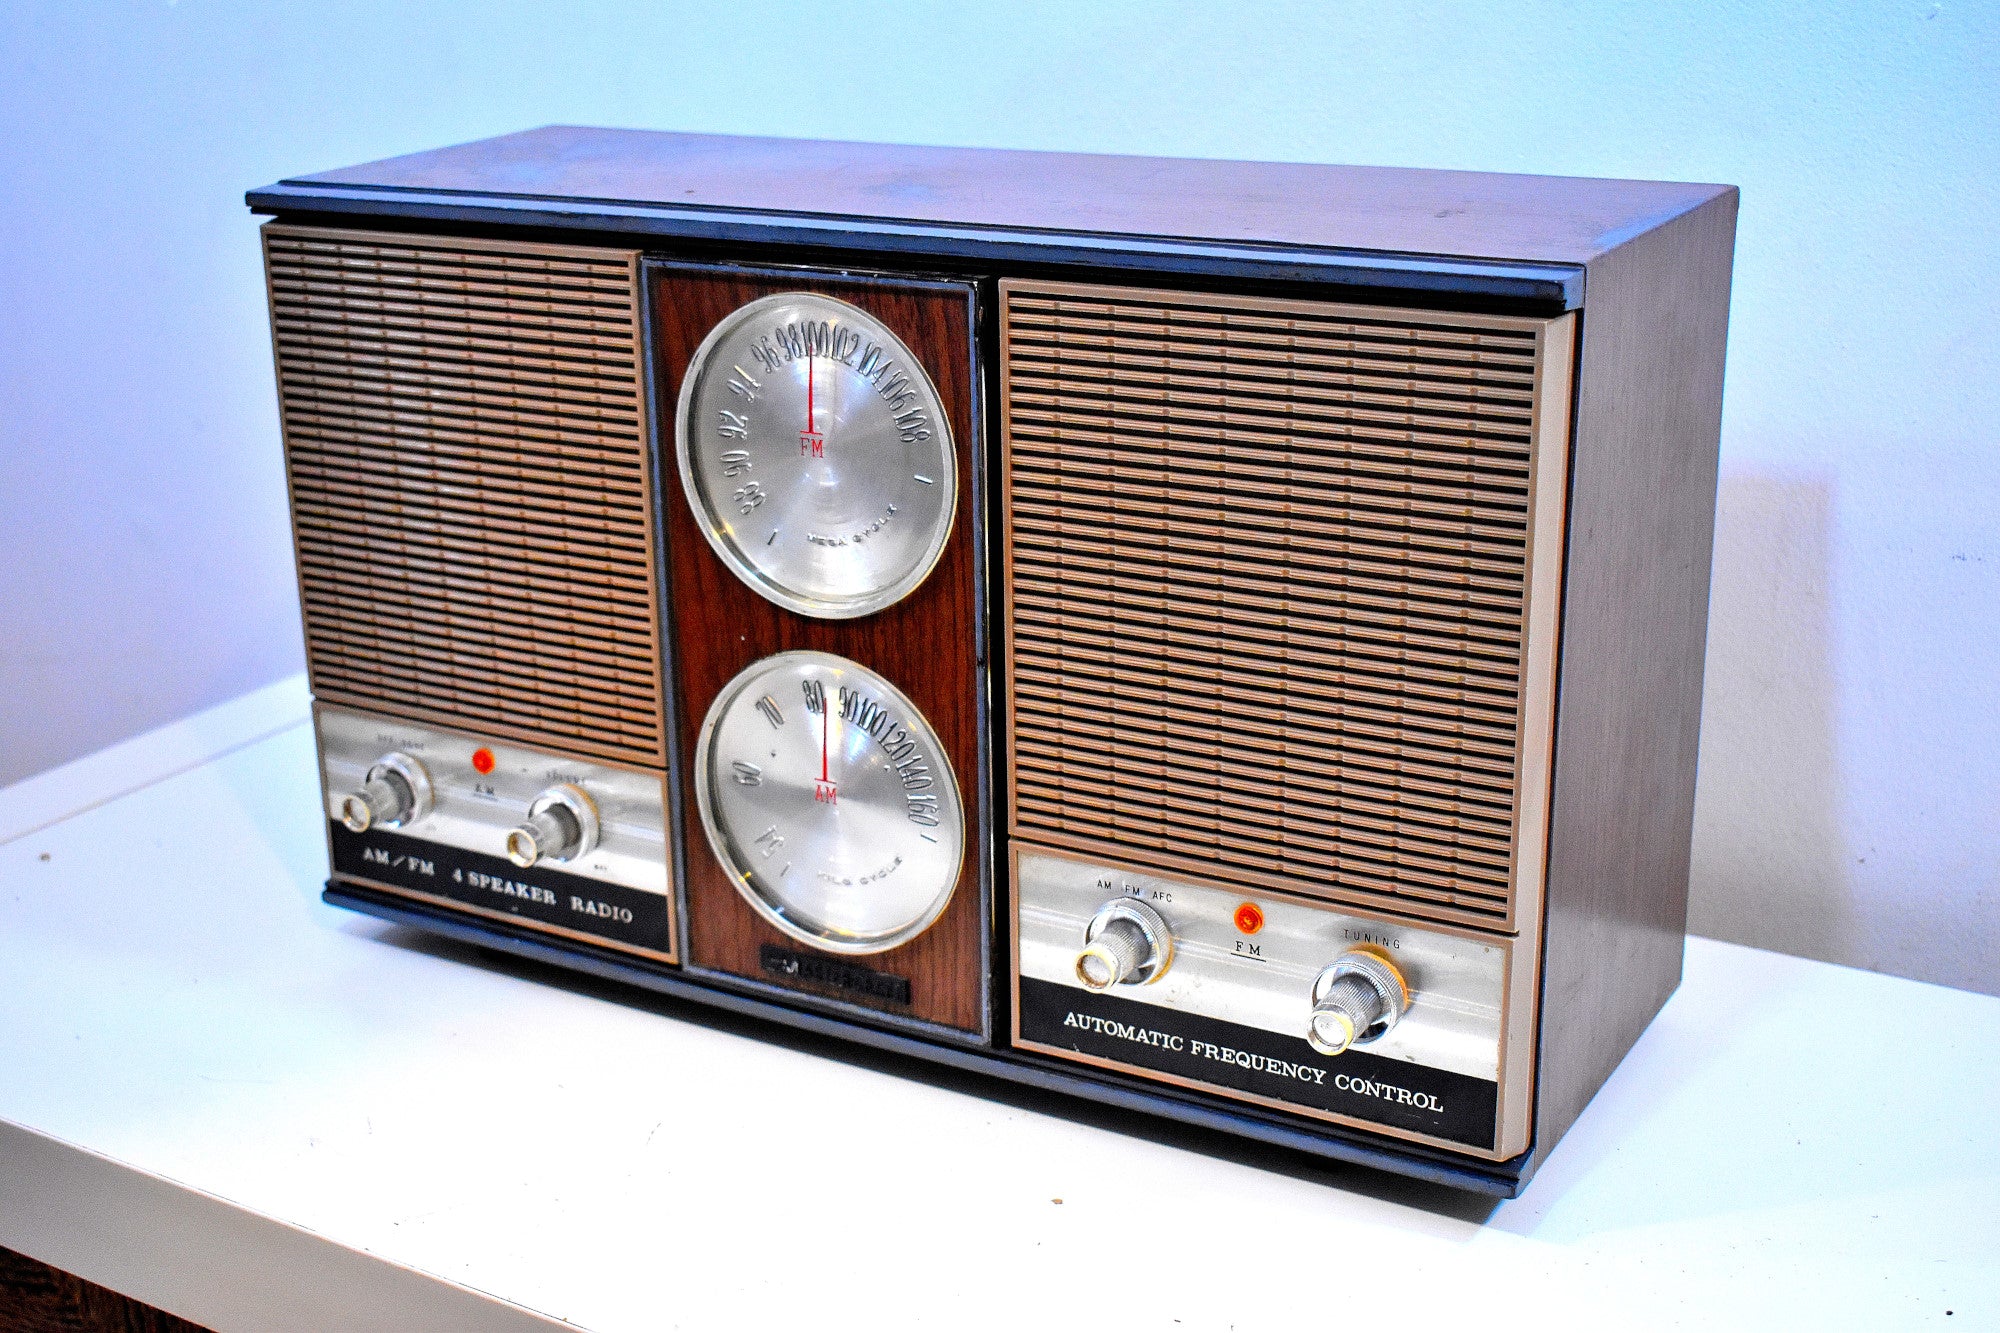 Bluetooth 準備完了 - 巨大な 1962 マスタークラフト モデル 3YE-380 AM FM 真空管ラジオなんてすごい！